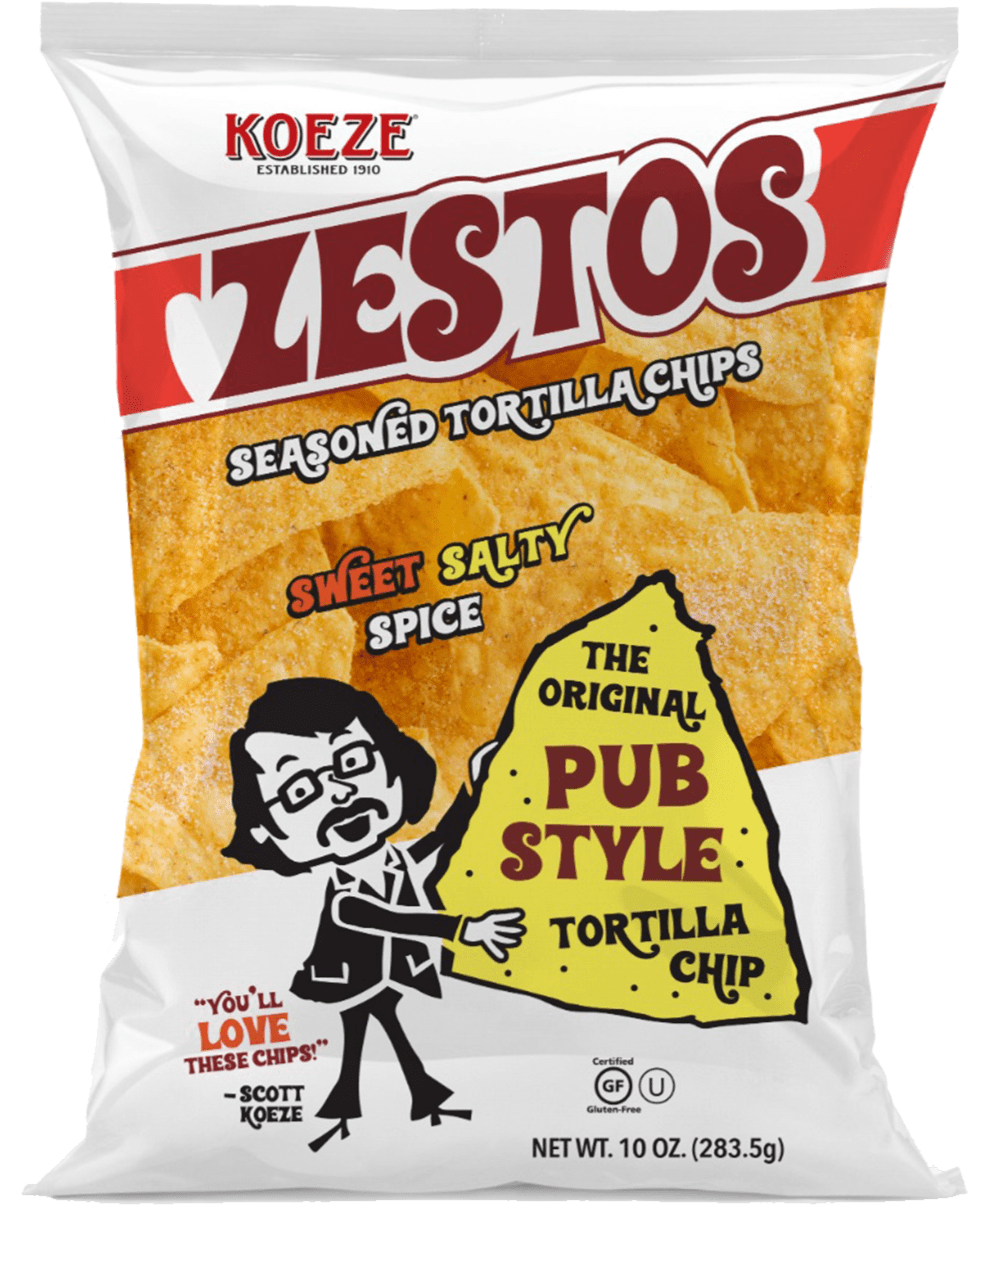 Image of Zestos Chips Bag